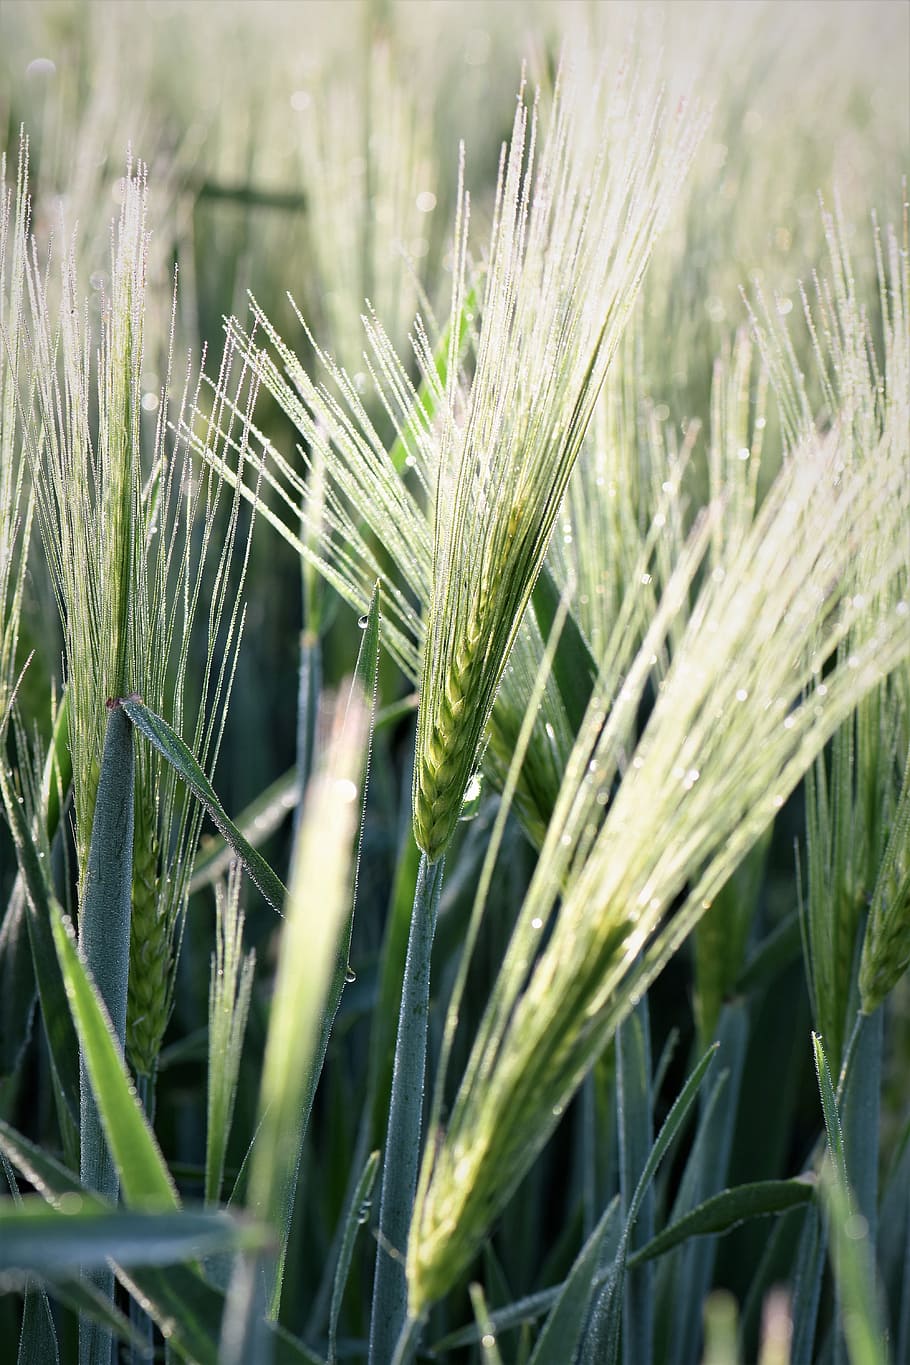 Winter Wheat, Wheat, Grass, Halme, grasses, close, nature, plant